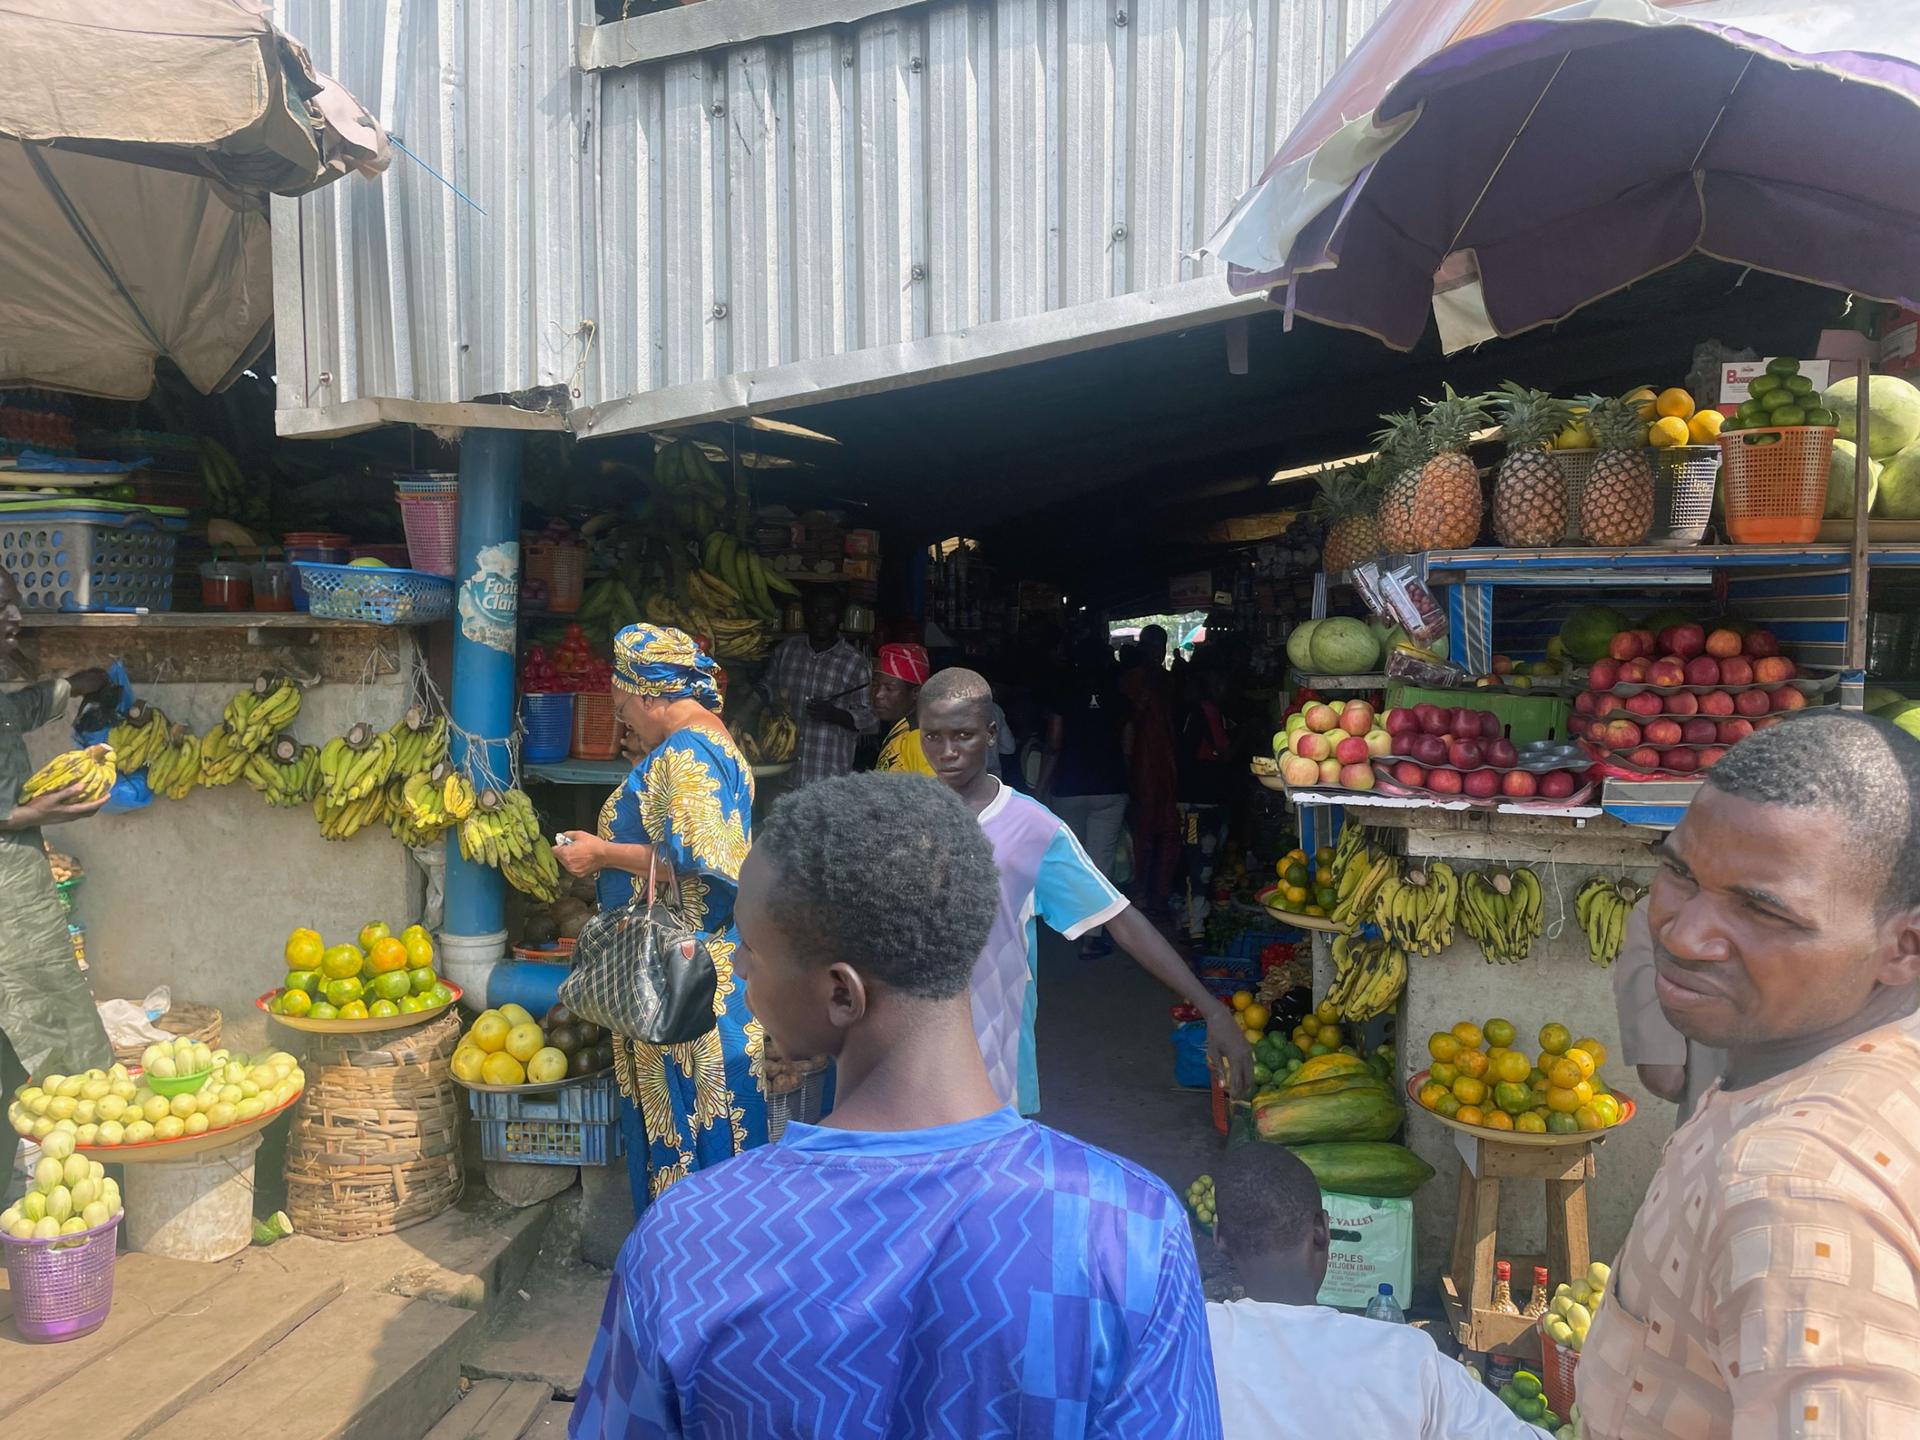 A bustling market in Abuja, Nigeria.